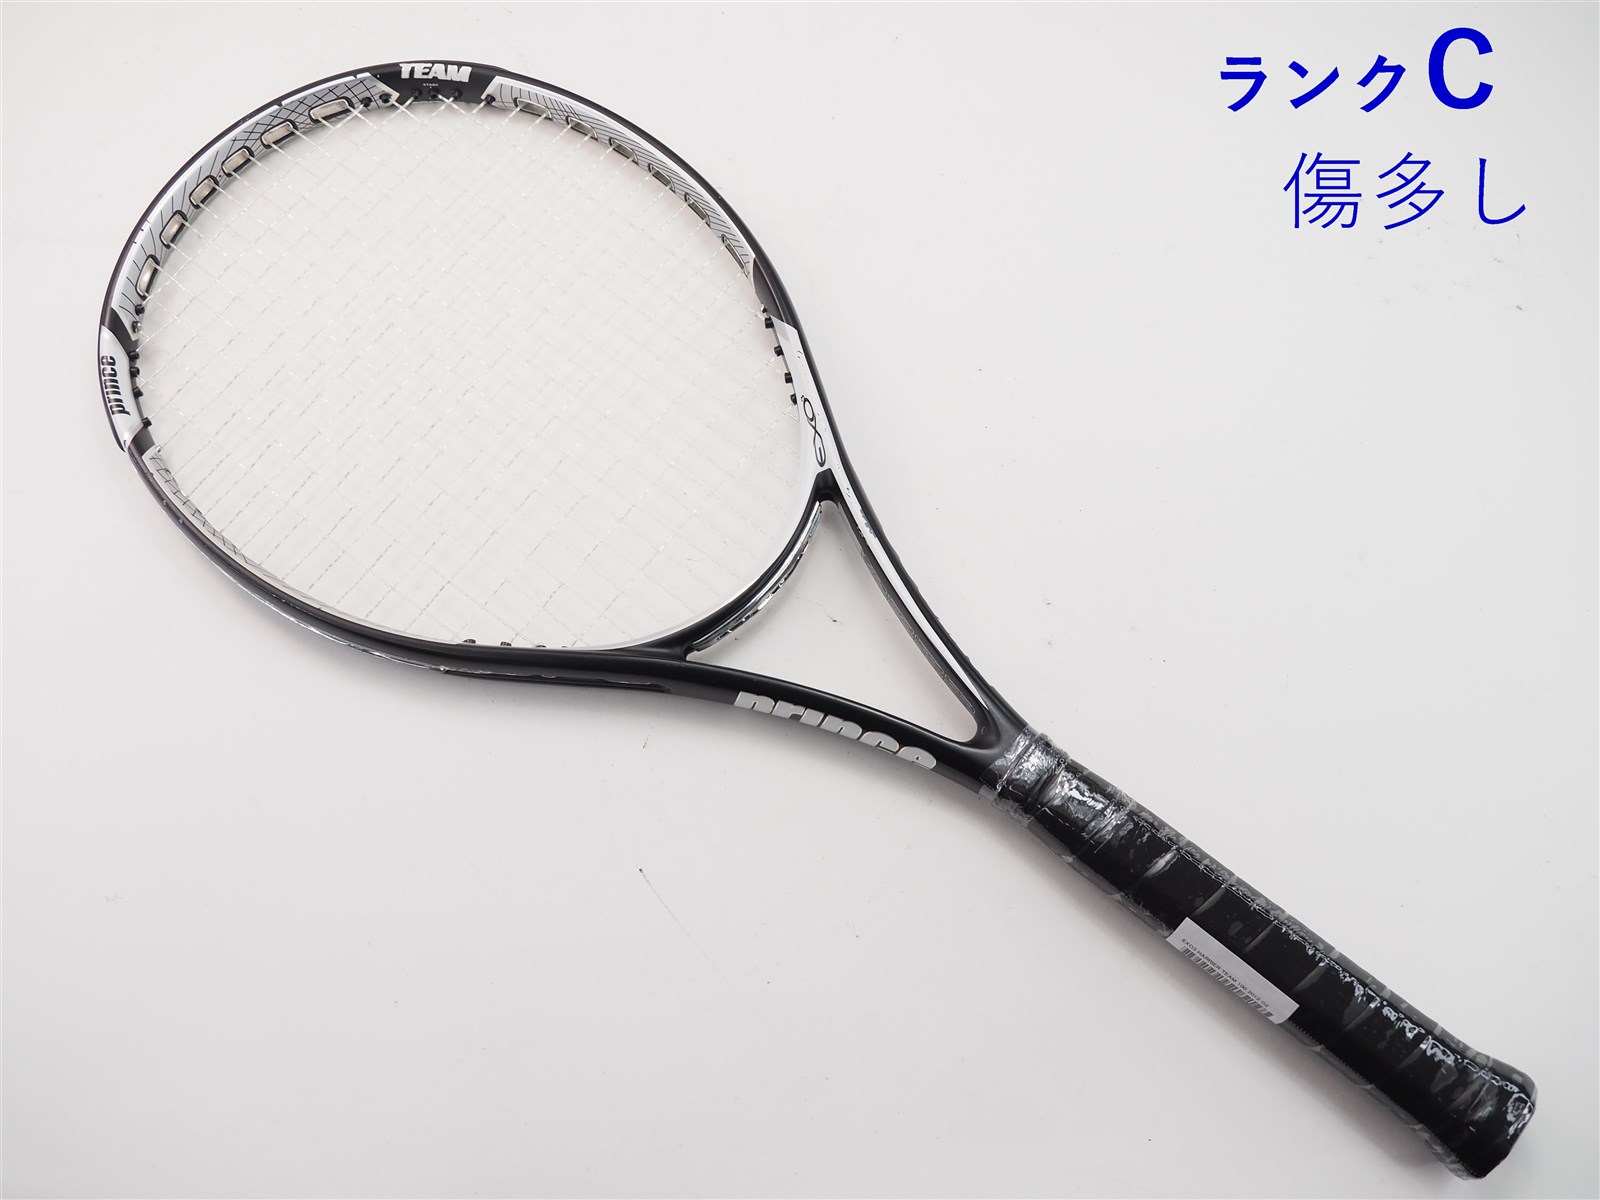 テニスラケット プリンス イーエックスオースリー ハリアー チーム 100 2012年モデル (G2)PRINCE EXO3 HARRIER TEAM 100 2012100平方インチ長さ